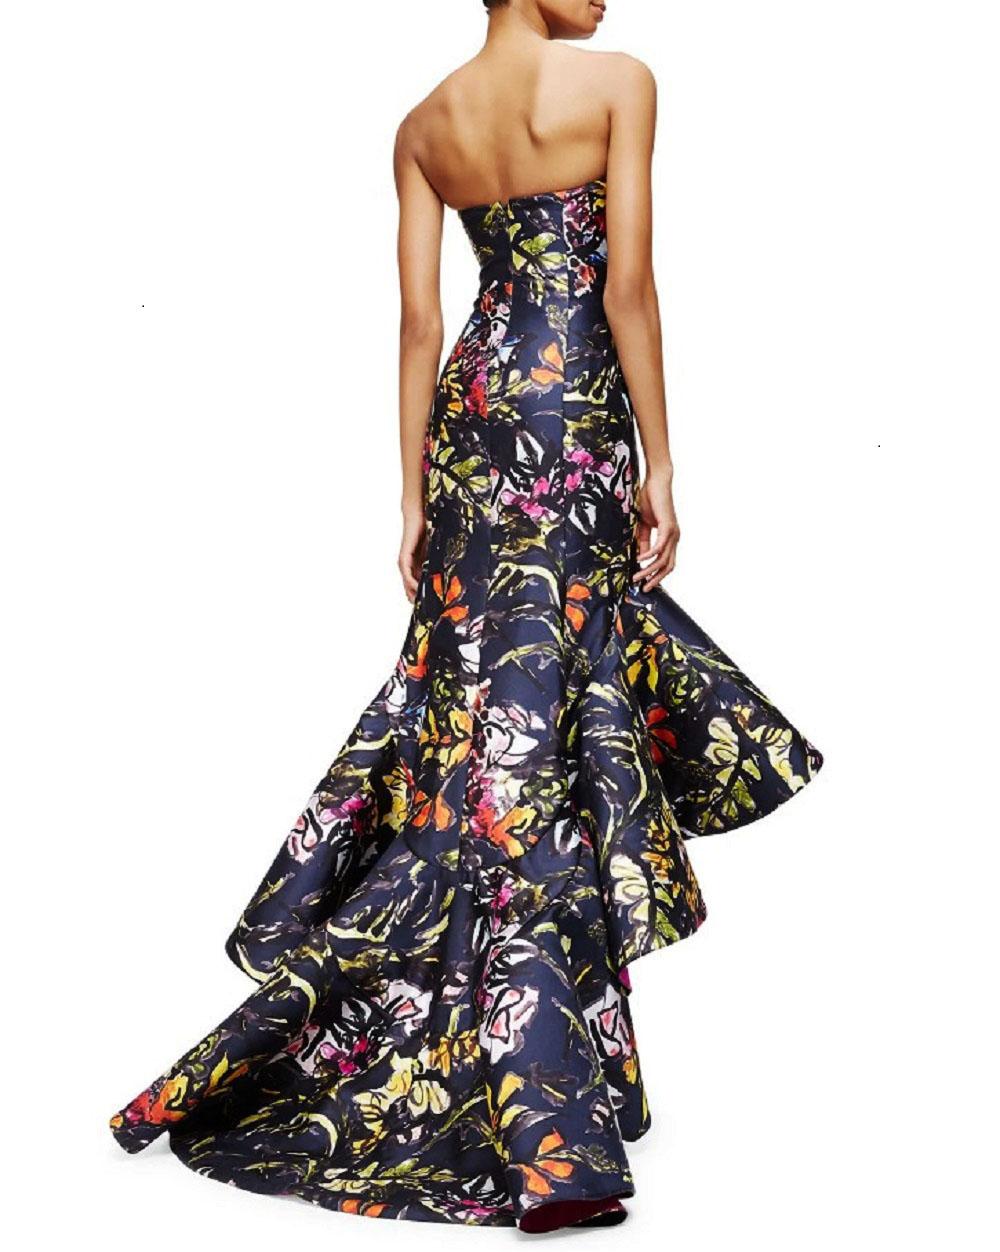 Oscar de la Renta PF 2015 Floral Printed High-Low Corset Dress Gown US size 6 For Sale 3